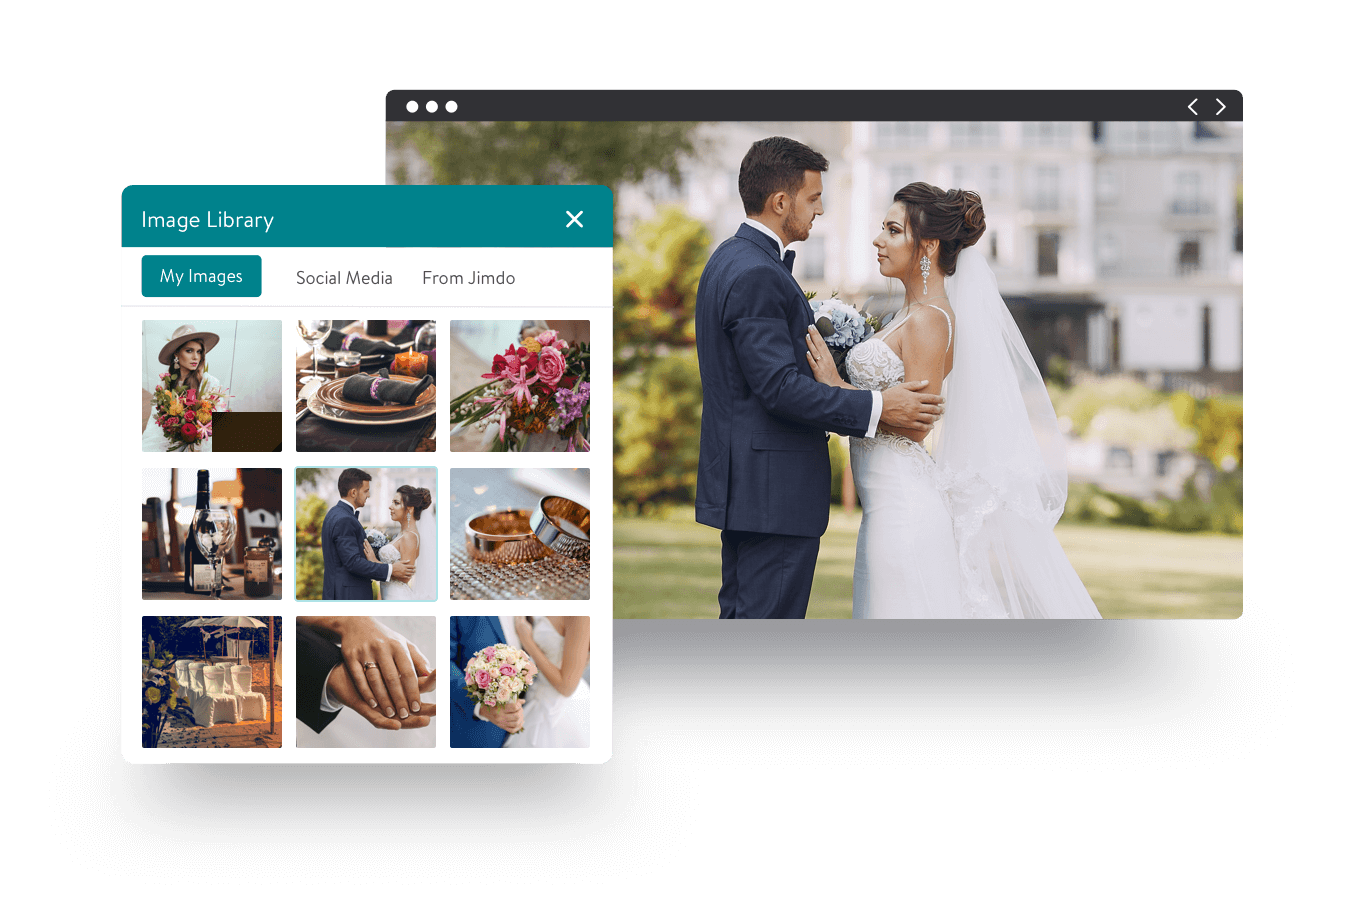 ジンドゥー AI ビルダーのイメージライブラリの画像の横に新婚カップルのウェディングフォトが表示されています。